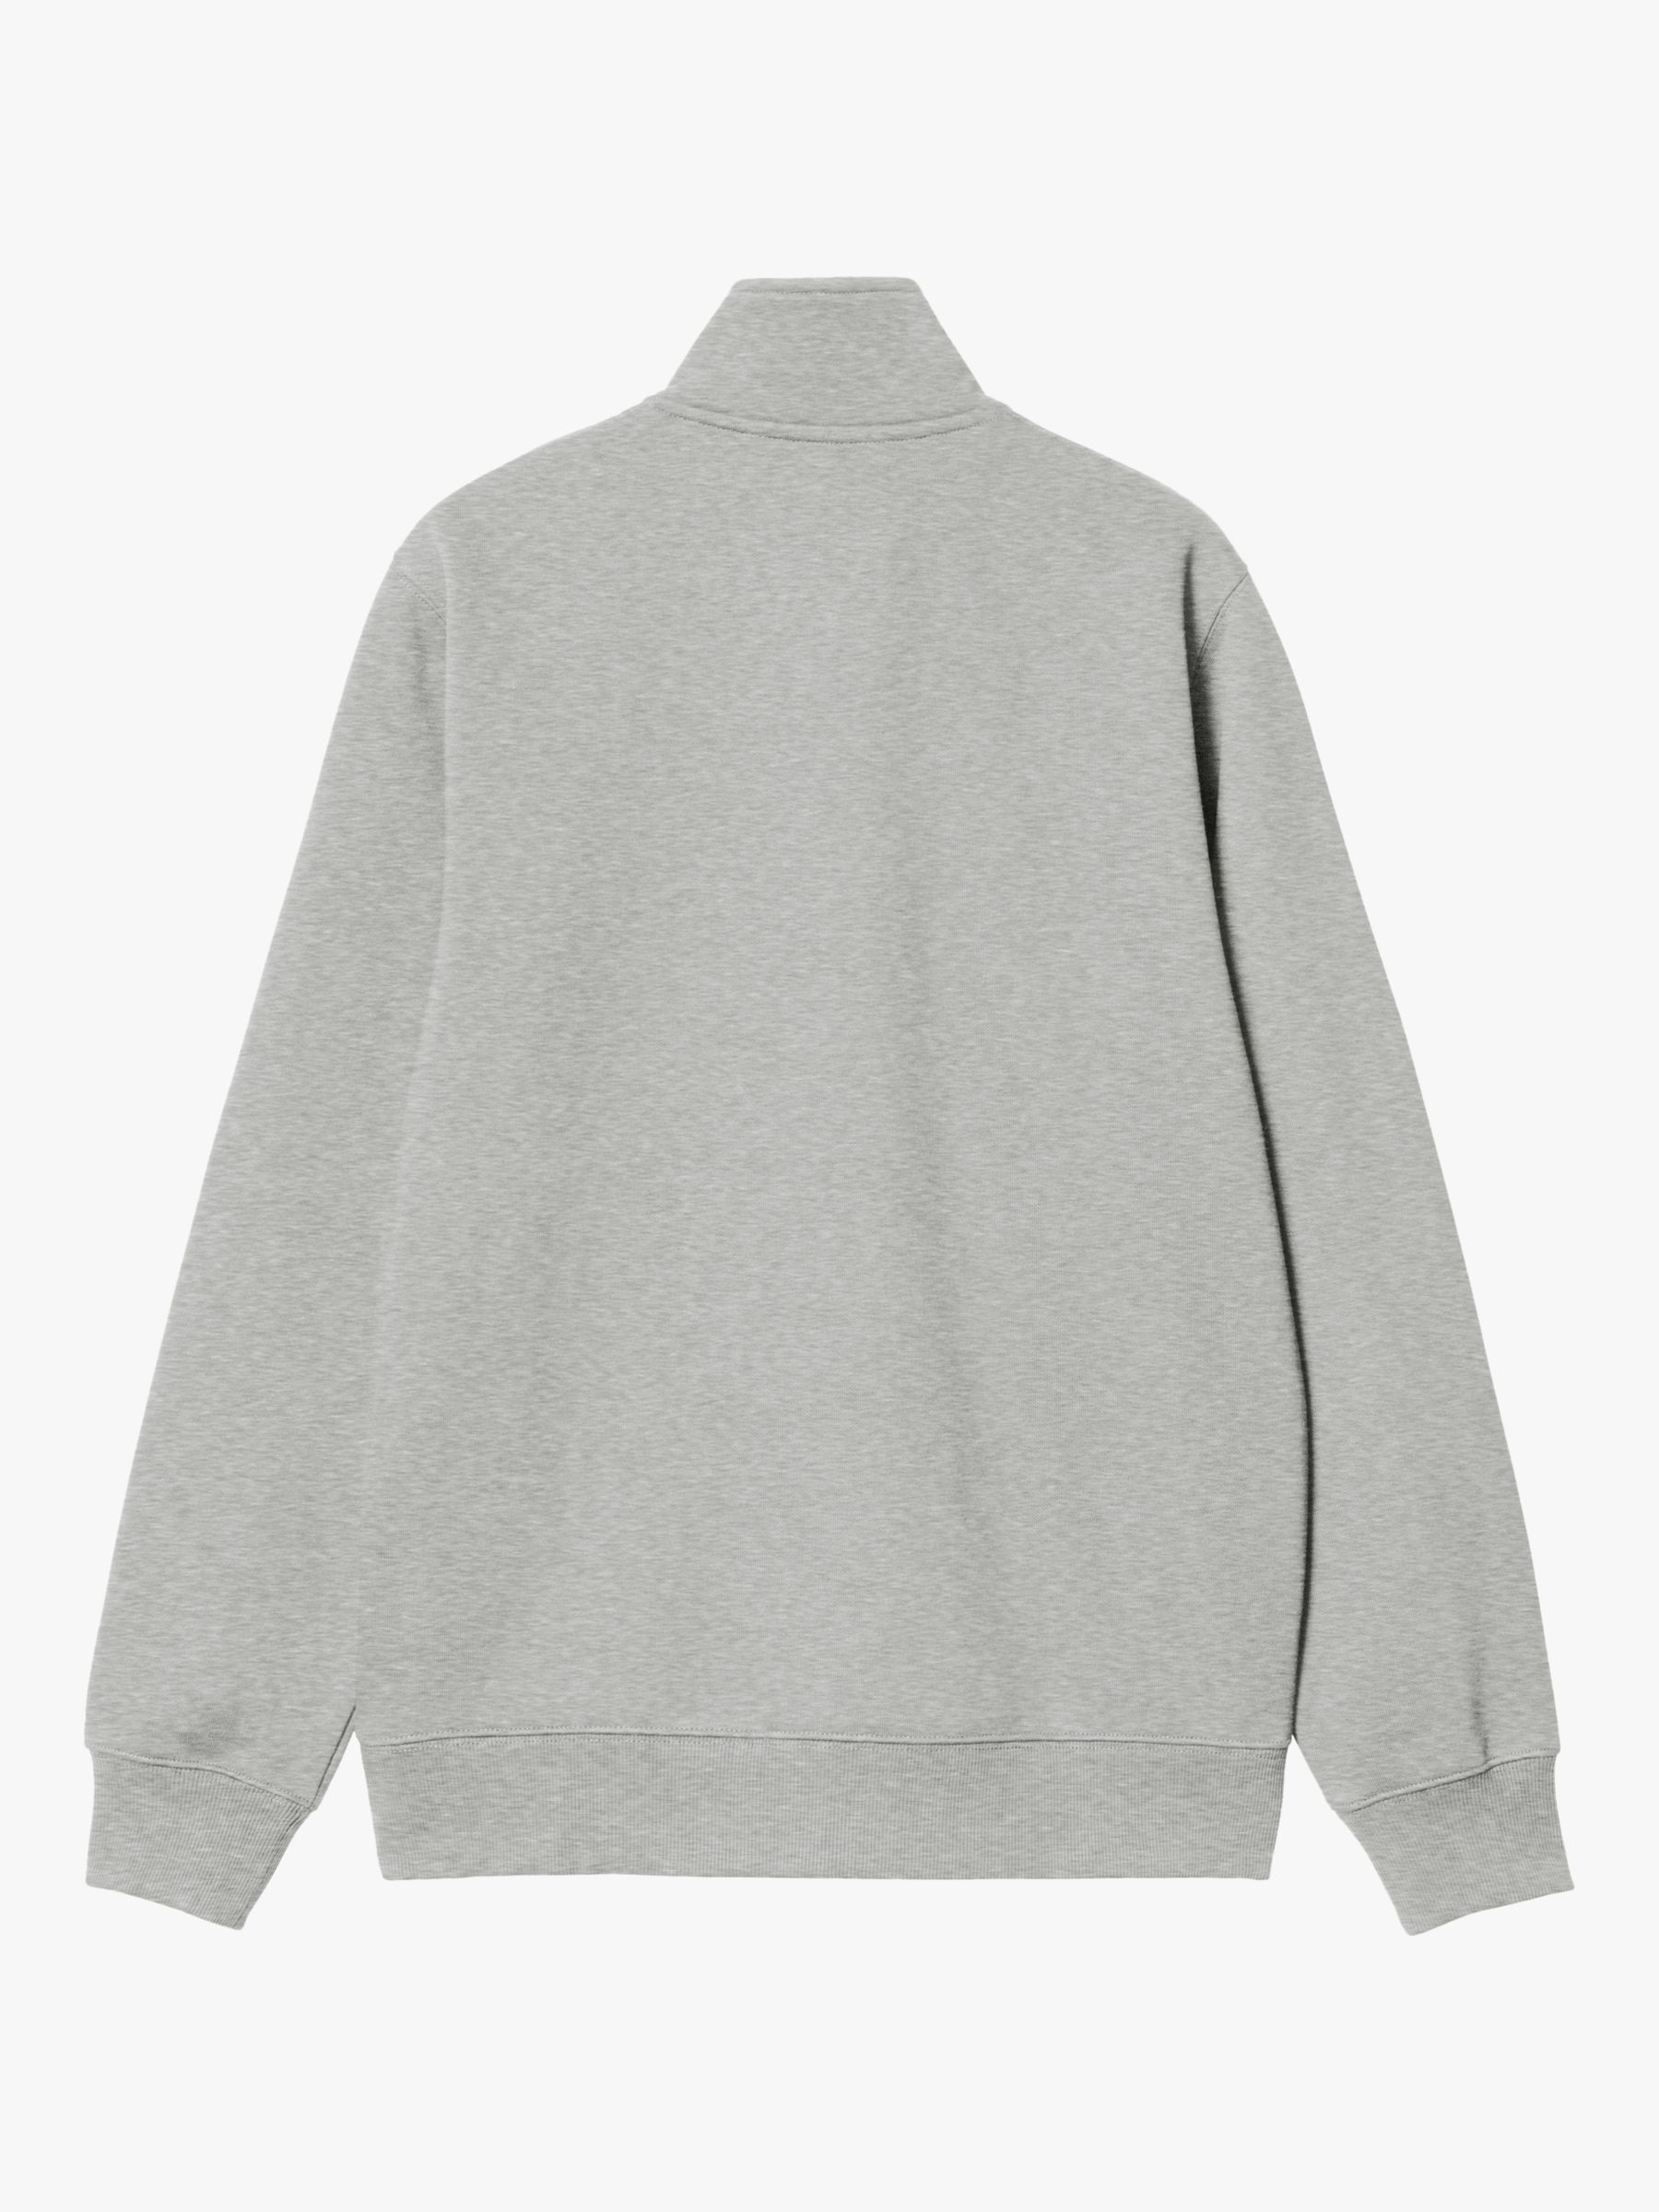 Carhartt WIP Regular Fit Zip Fleece Top, Grey, S